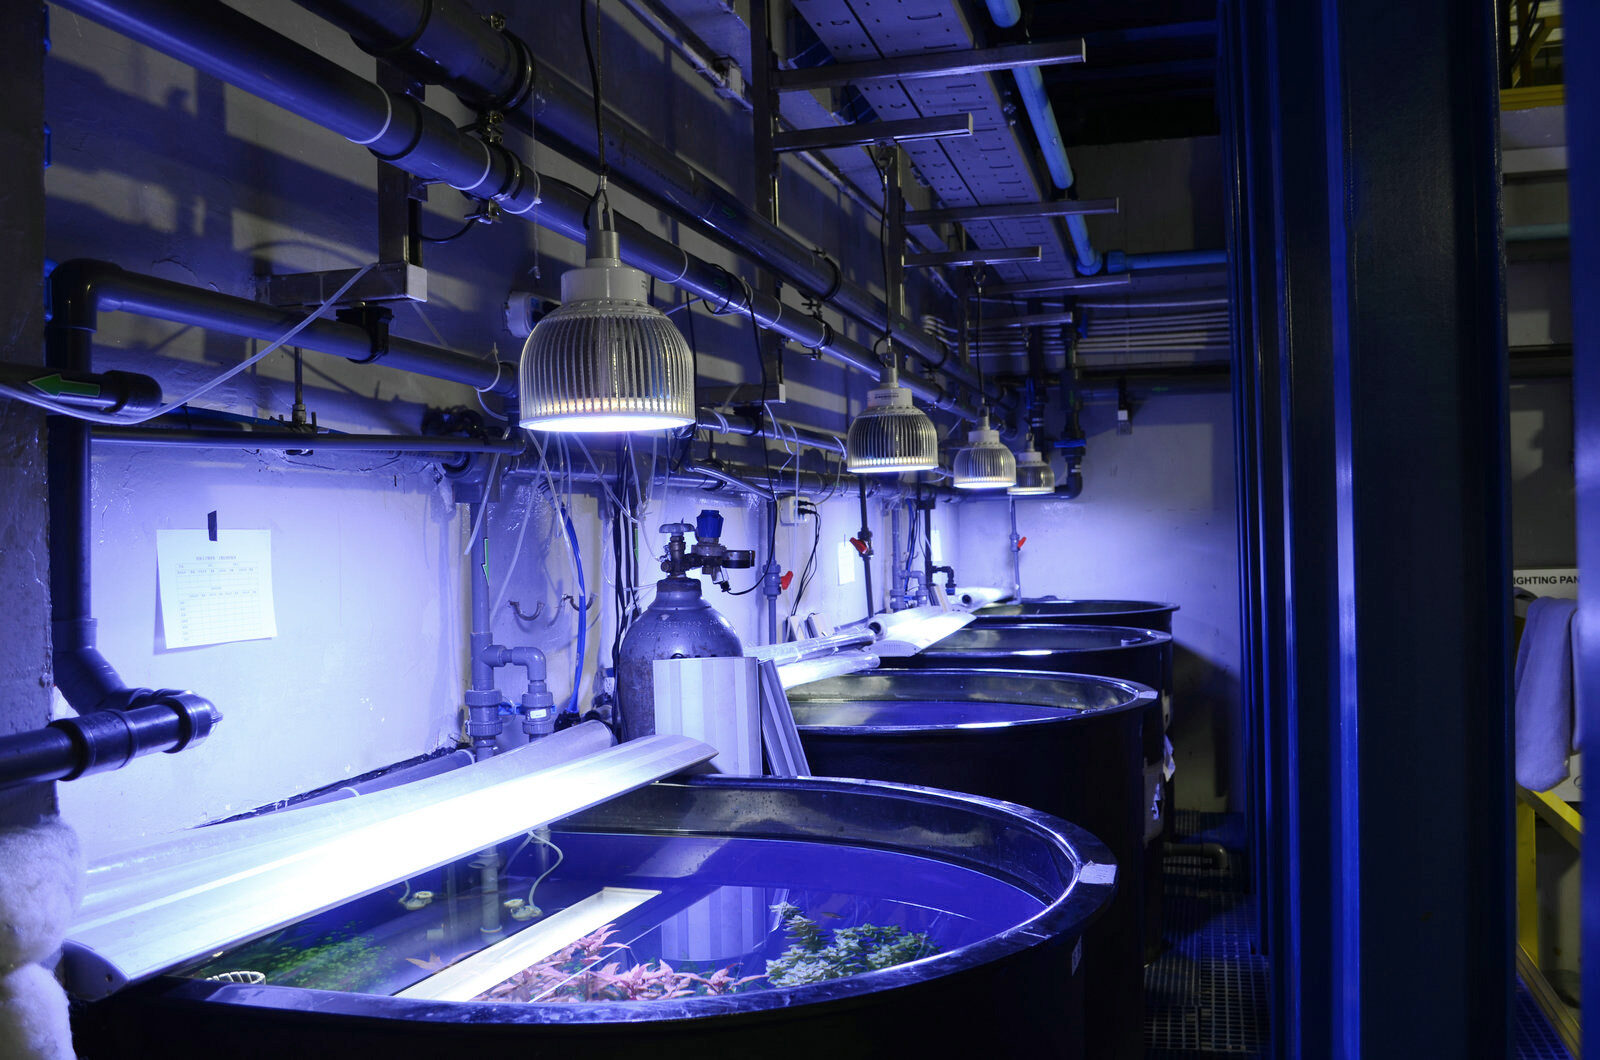 acquario pubblico d'acqua dolce piantato con luci a led orphek